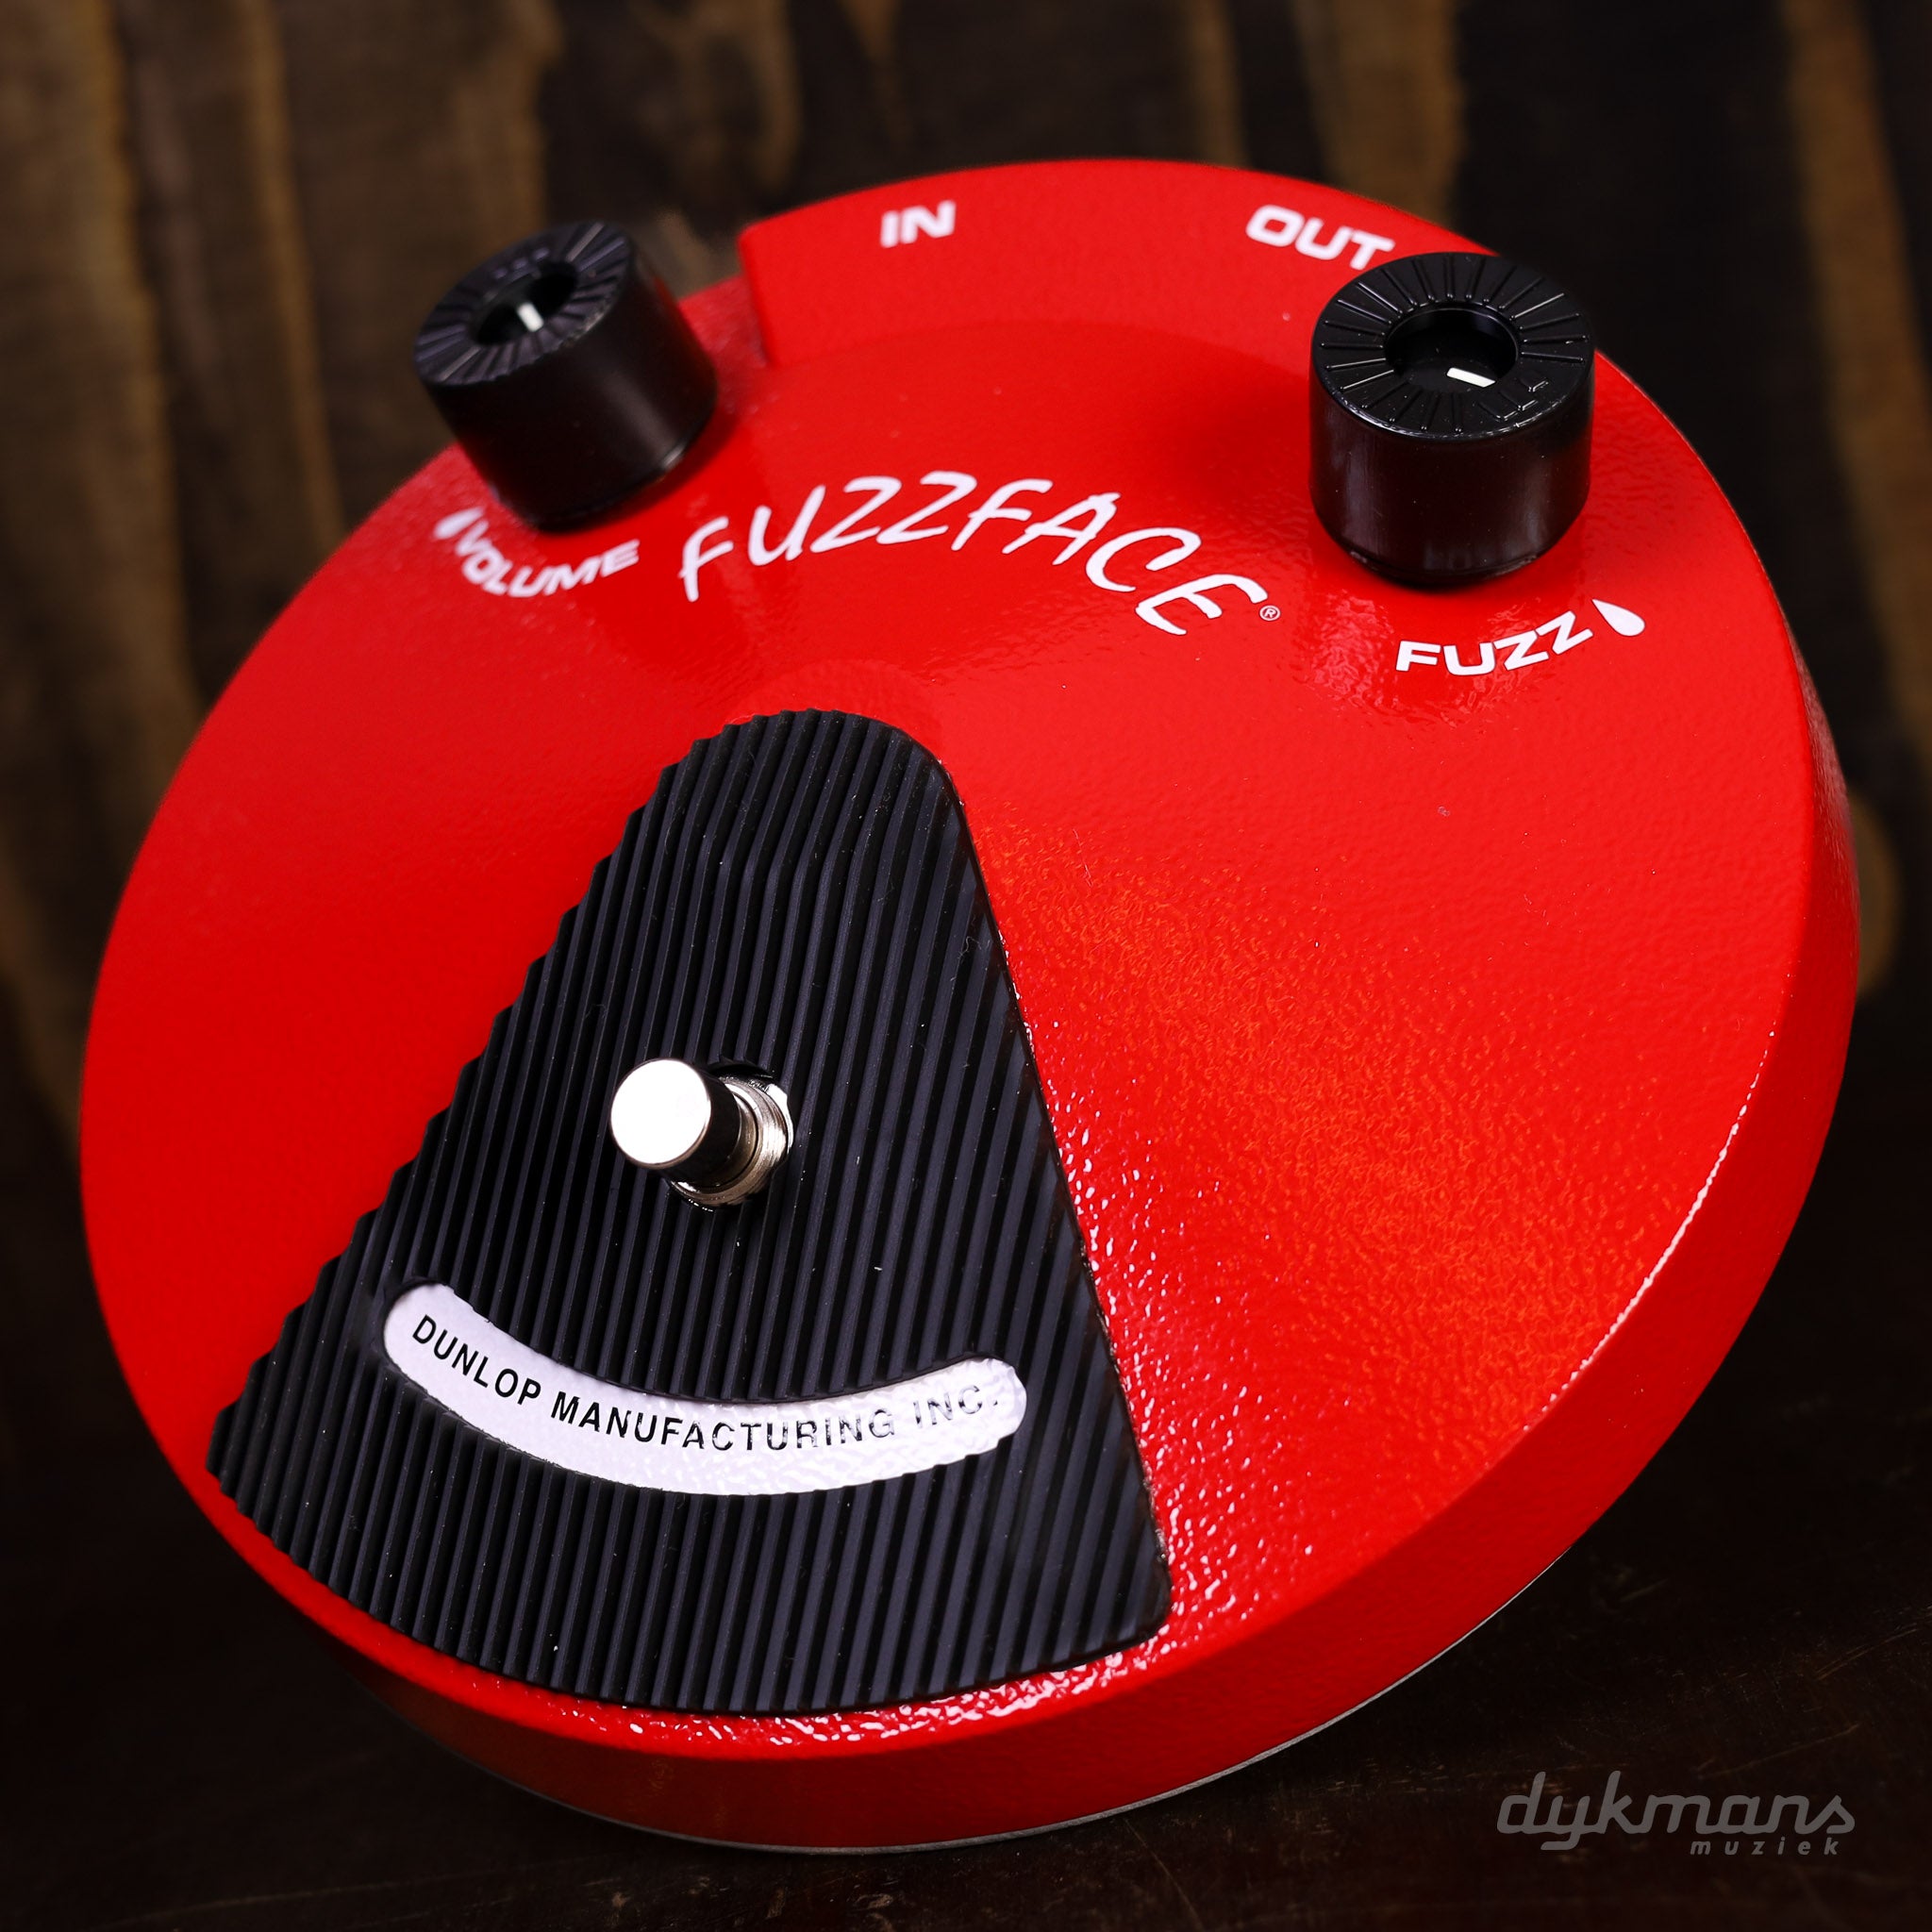 Dunlop JDF2 Fuzz Face Distortion – Dijkmans Muziek